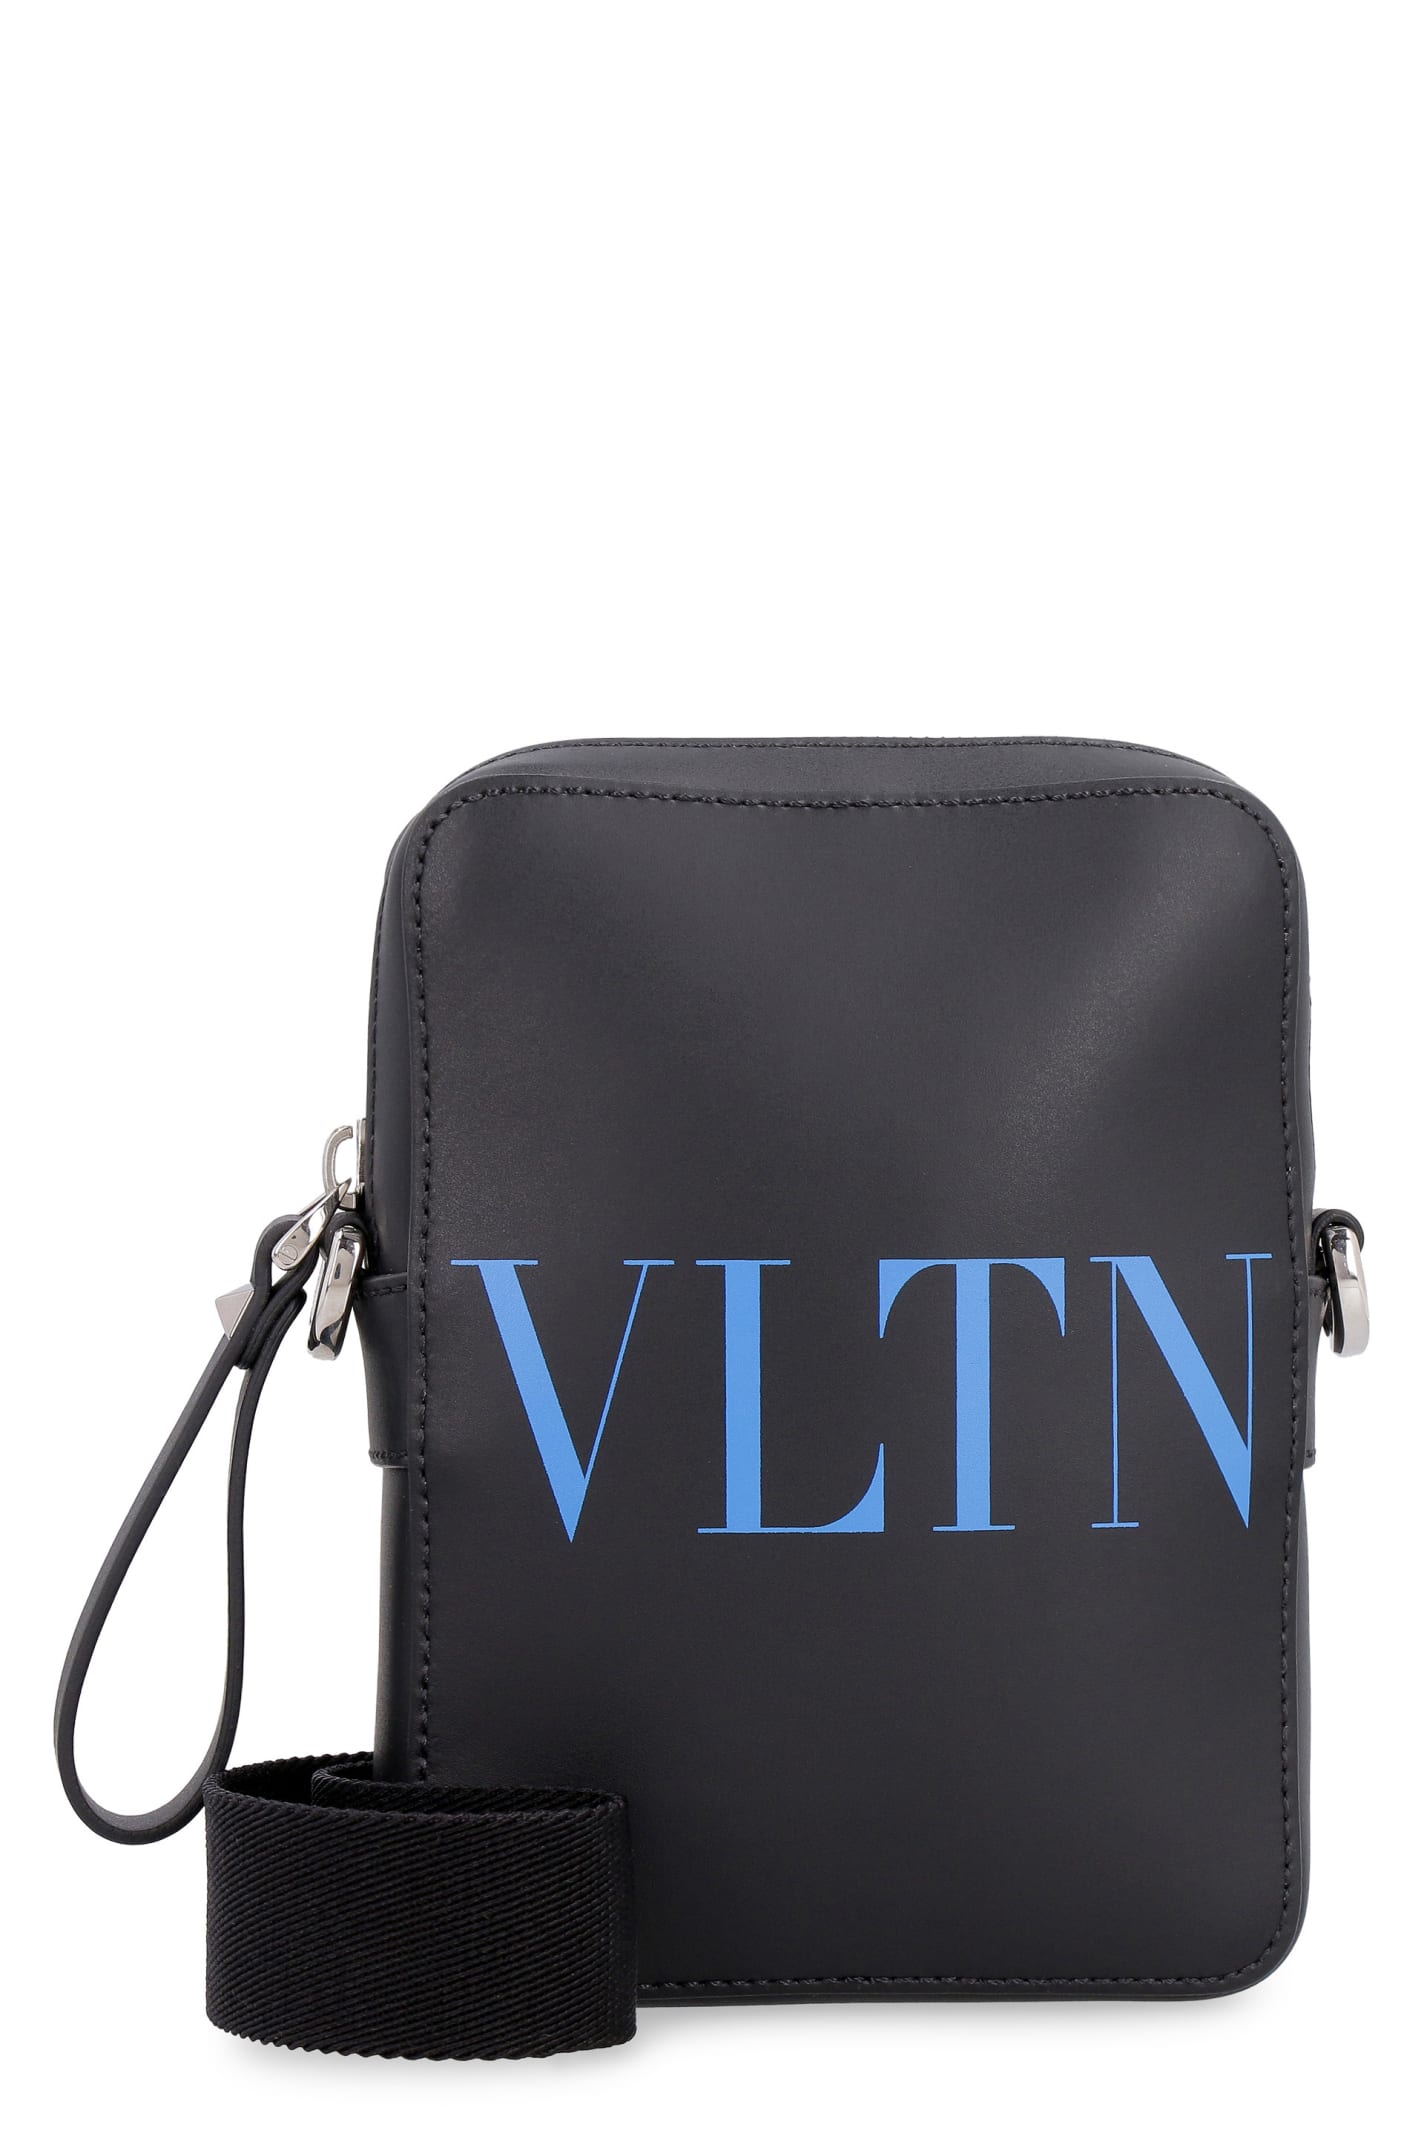 Valentino Leather Messenger Bag - Valentino Garavani